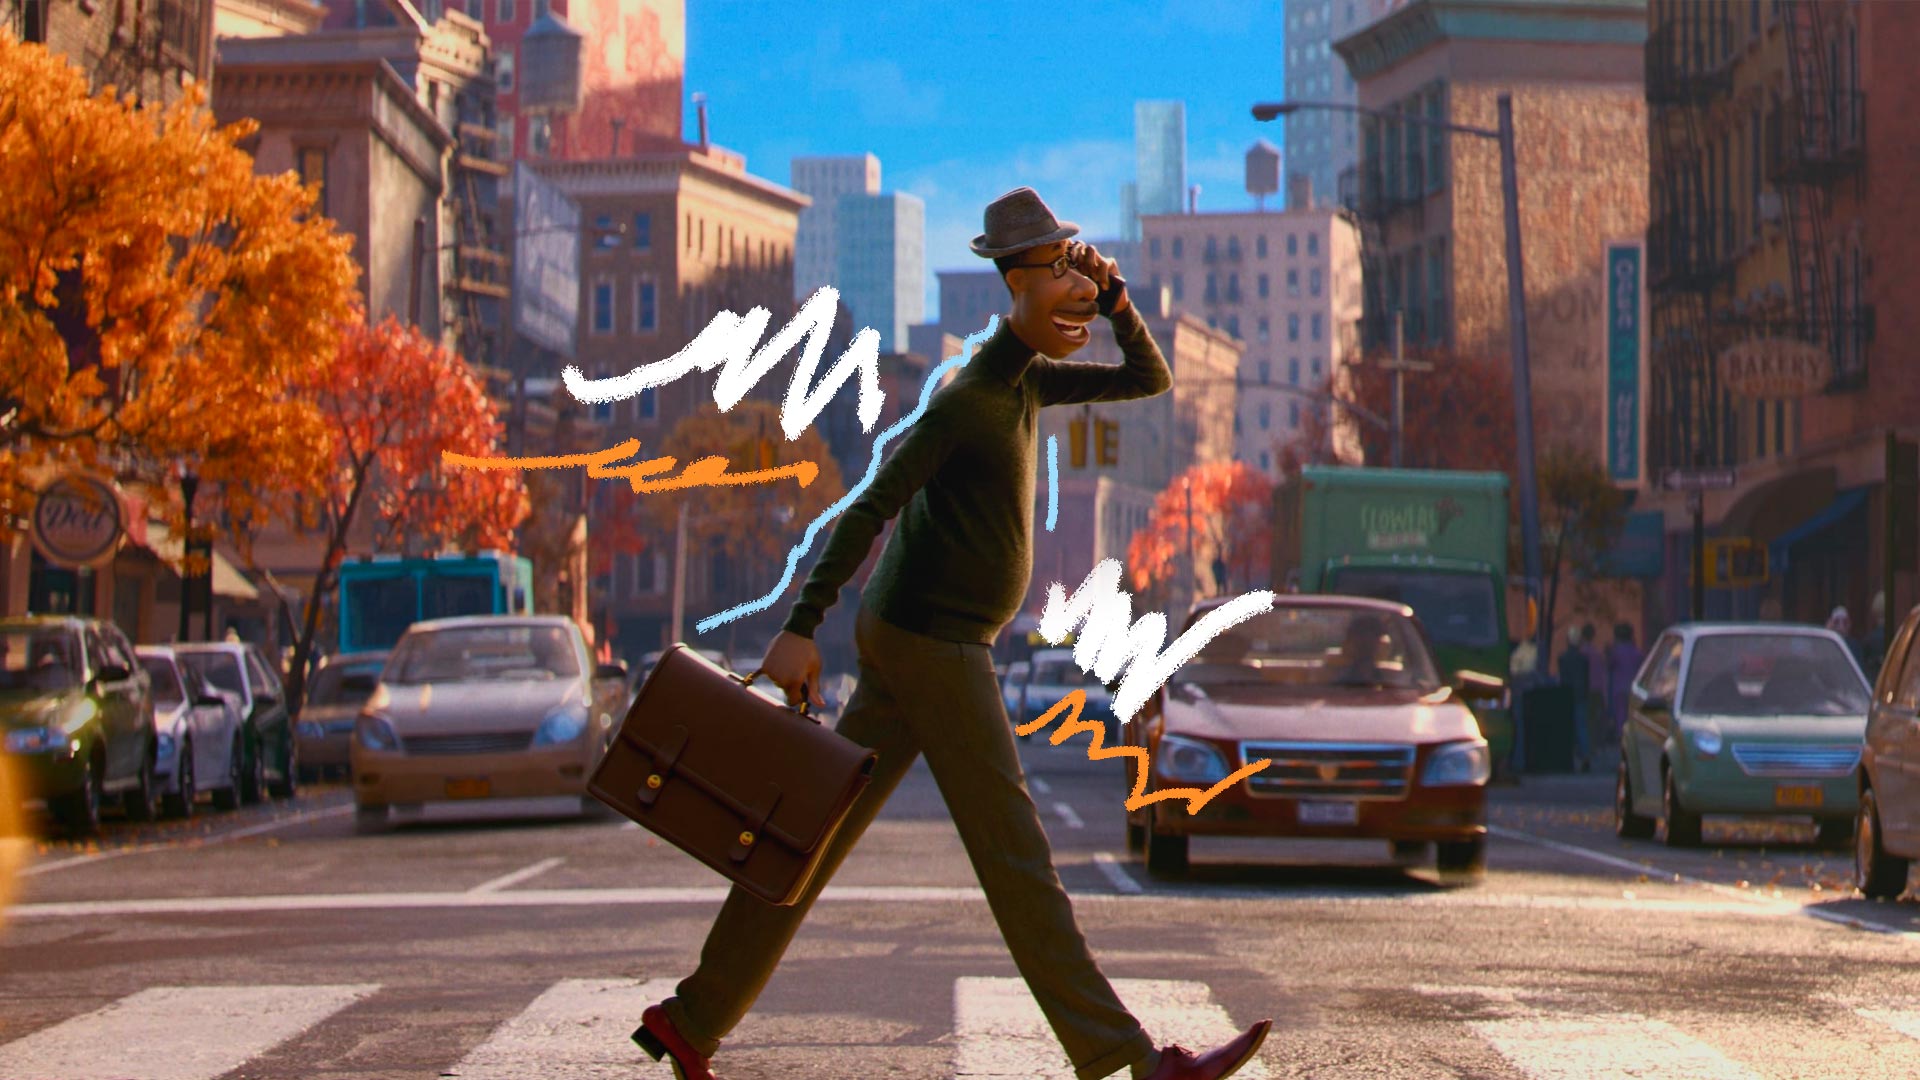 Imagem do filme "Soul" em que o personagem Joe está atravessando a rua